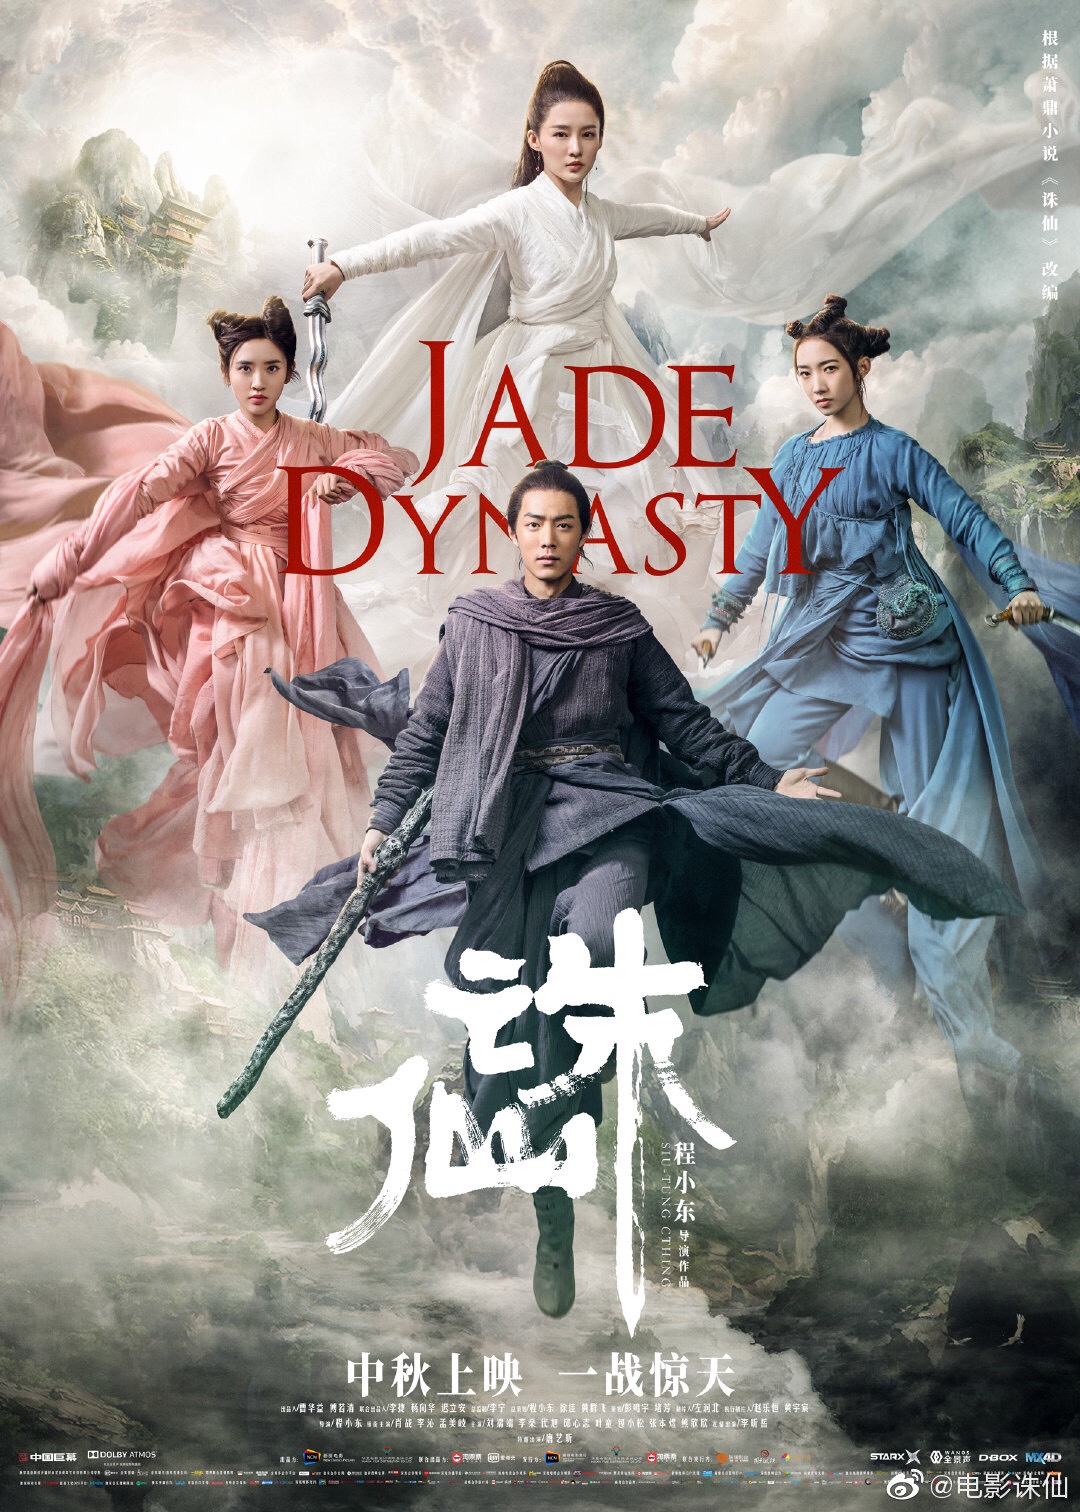 ดูหนังออนไลน์ฟรี Jade Dynasty (2019) กระบี่เทพสังหาร